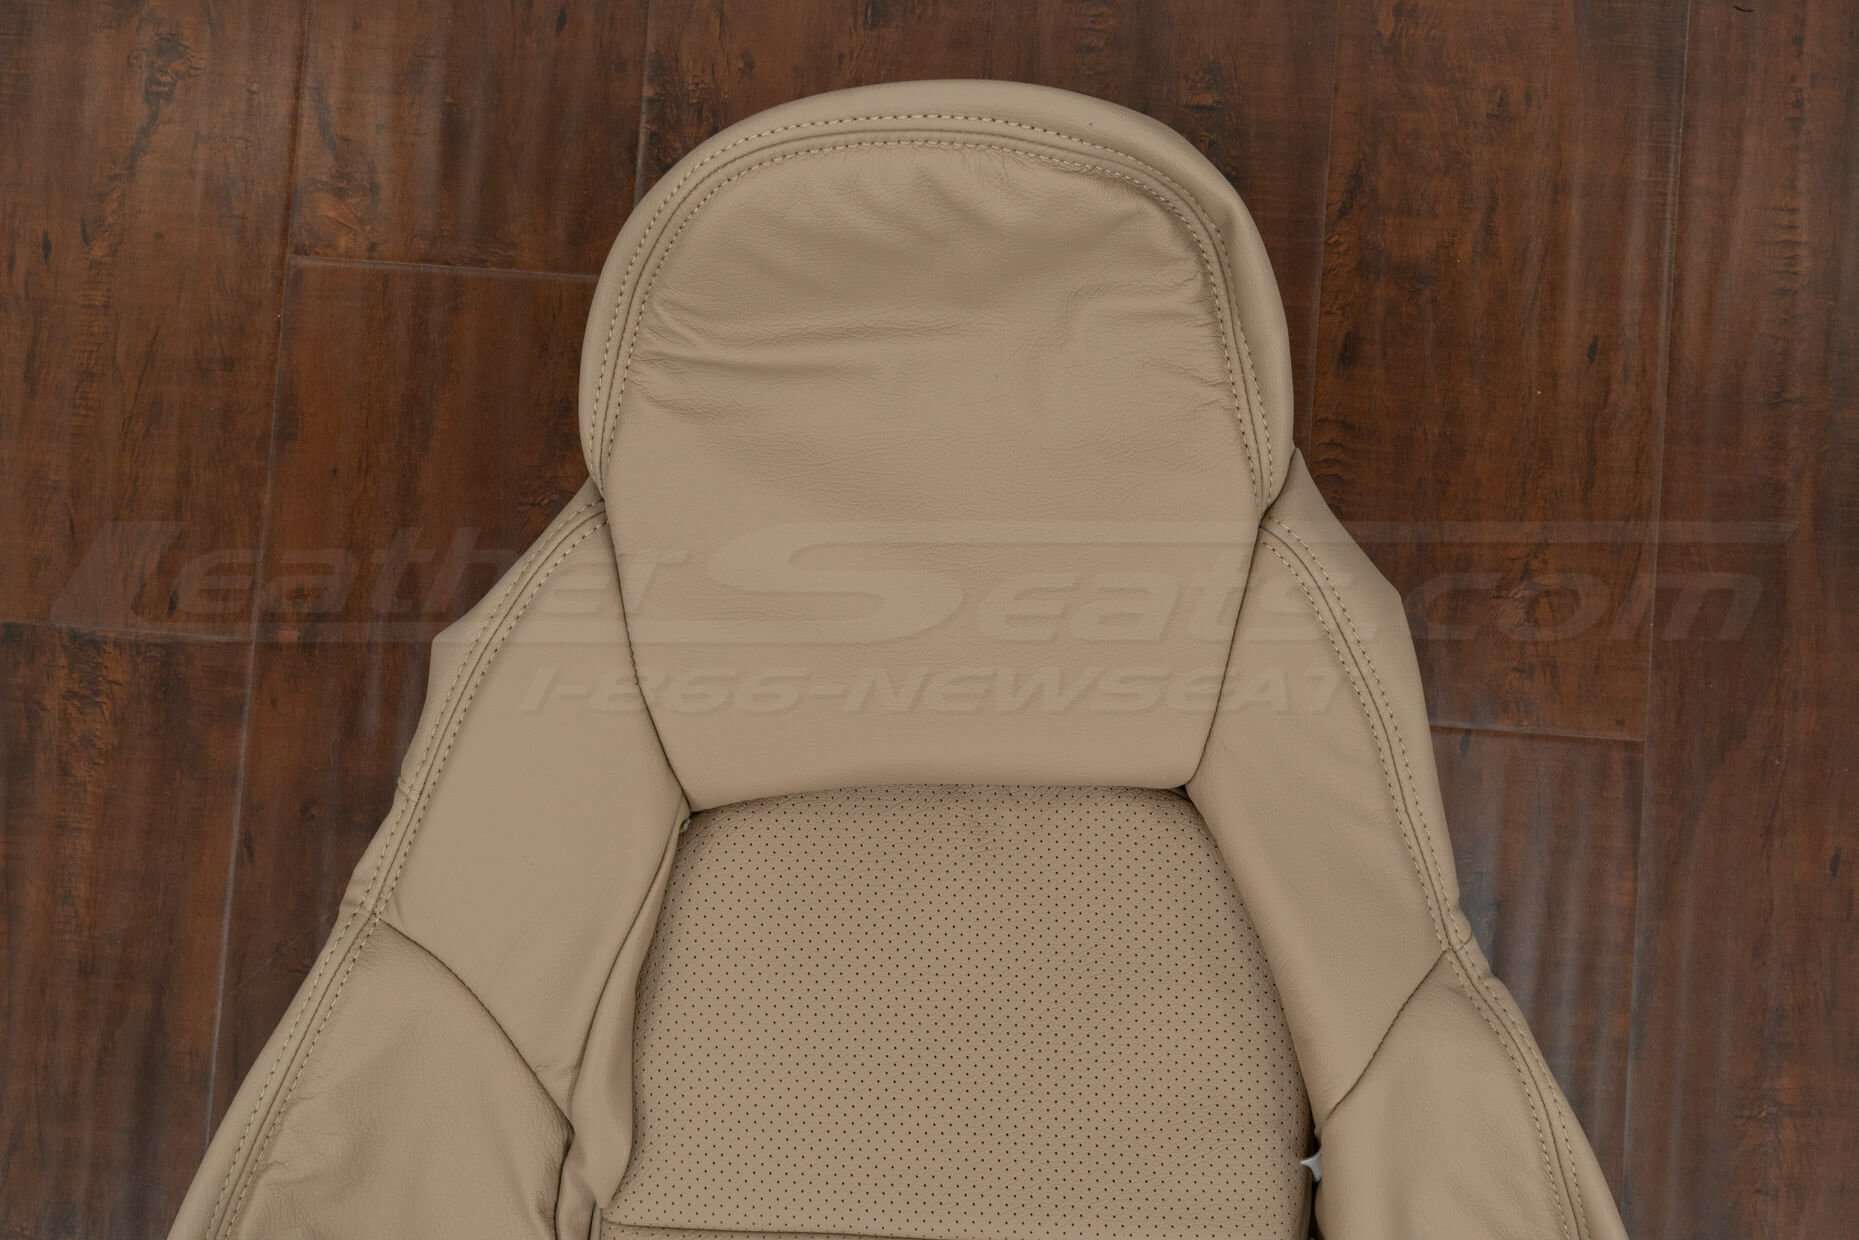 Headrest section of backrest upholstery